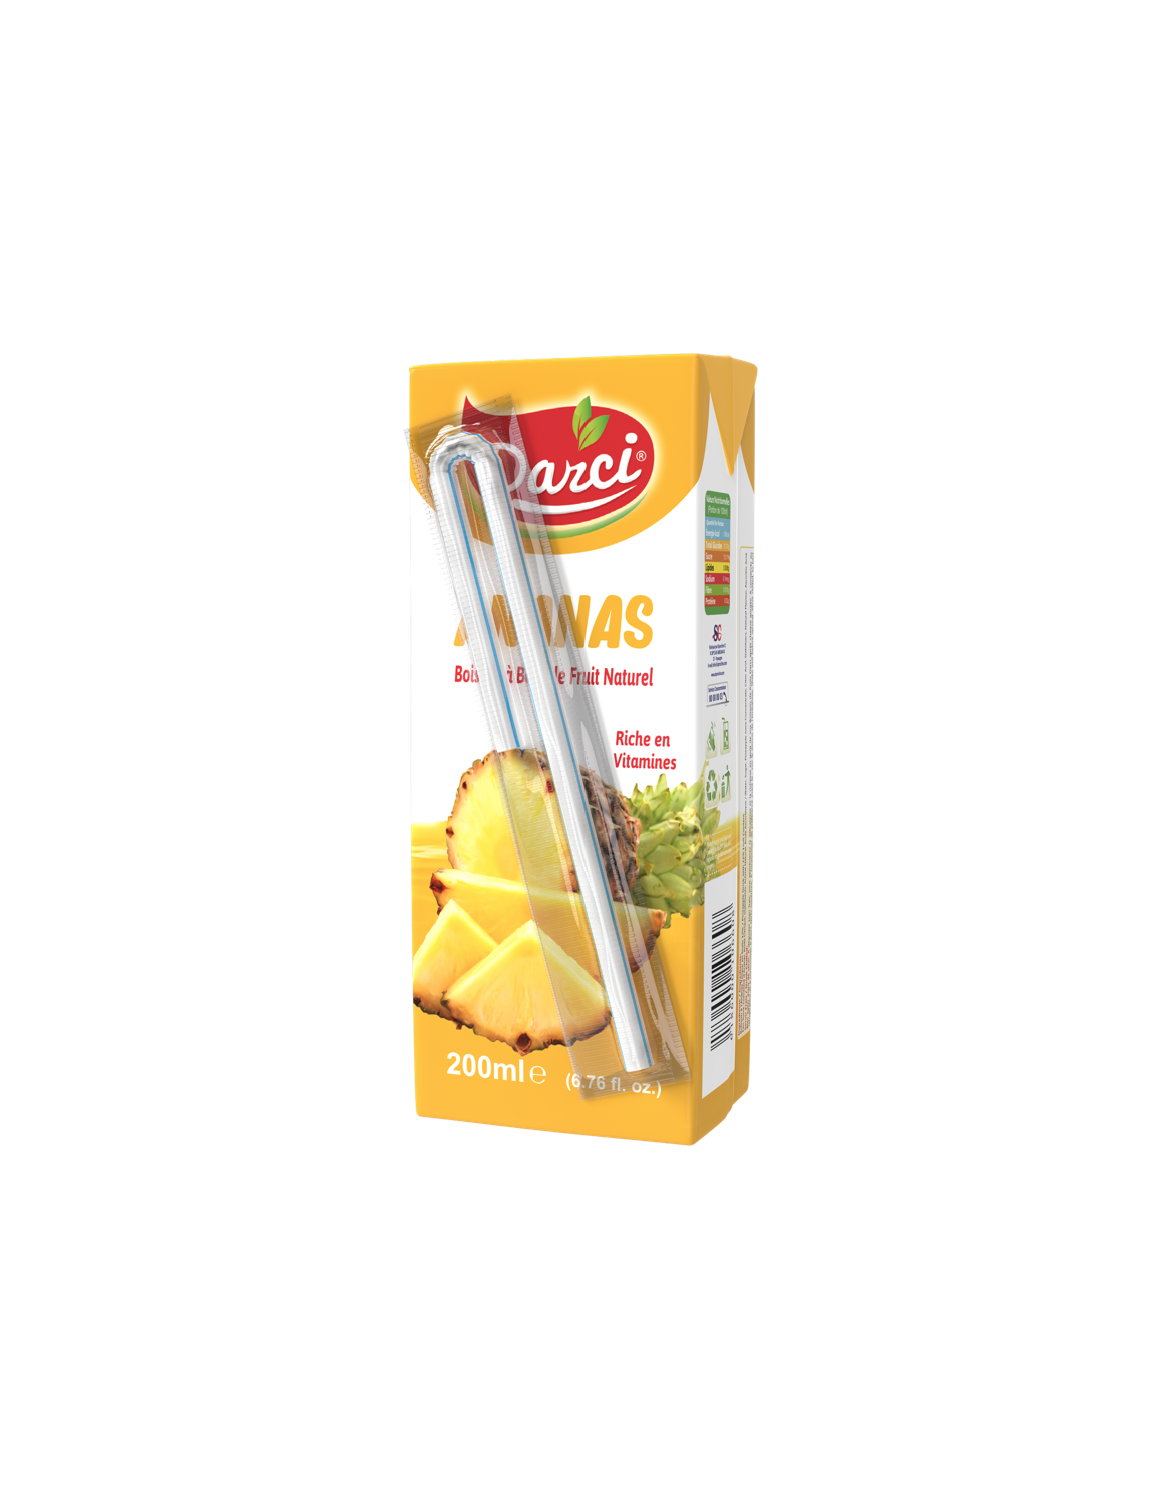 DARCI-boisson-Ananas-200ml_siprochim